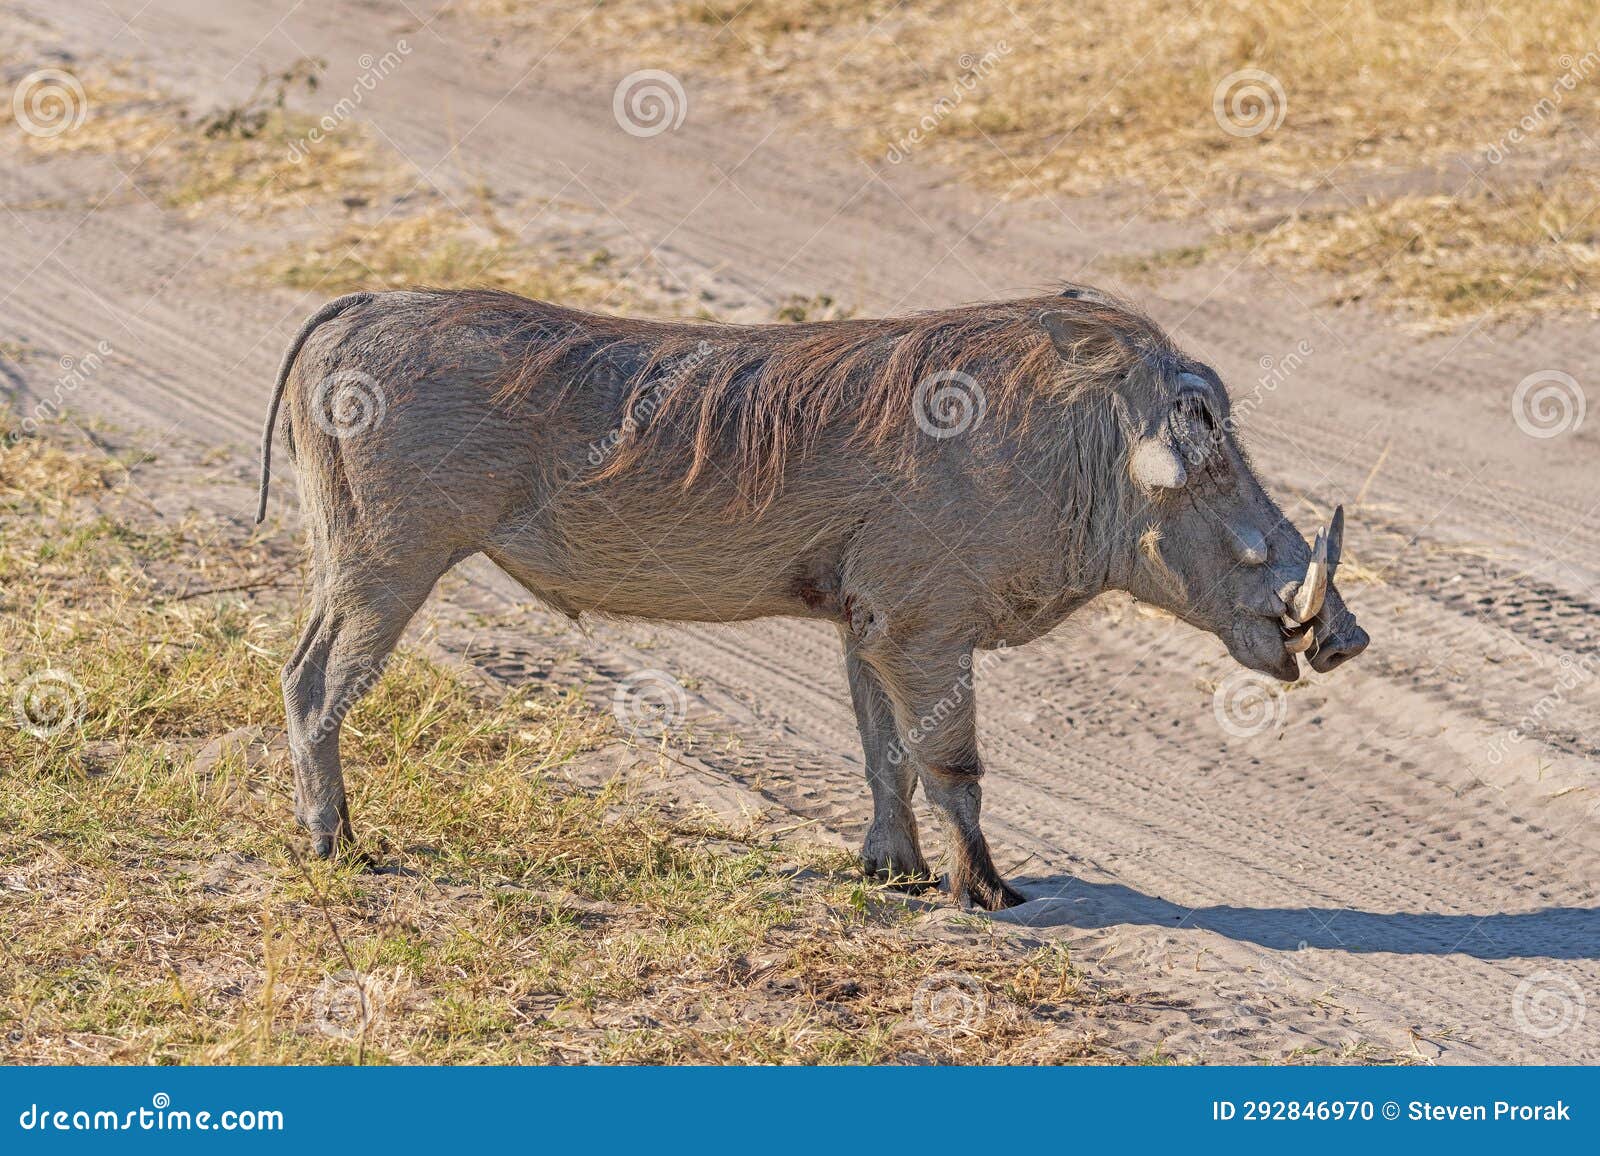 common warthog on rural african veldt